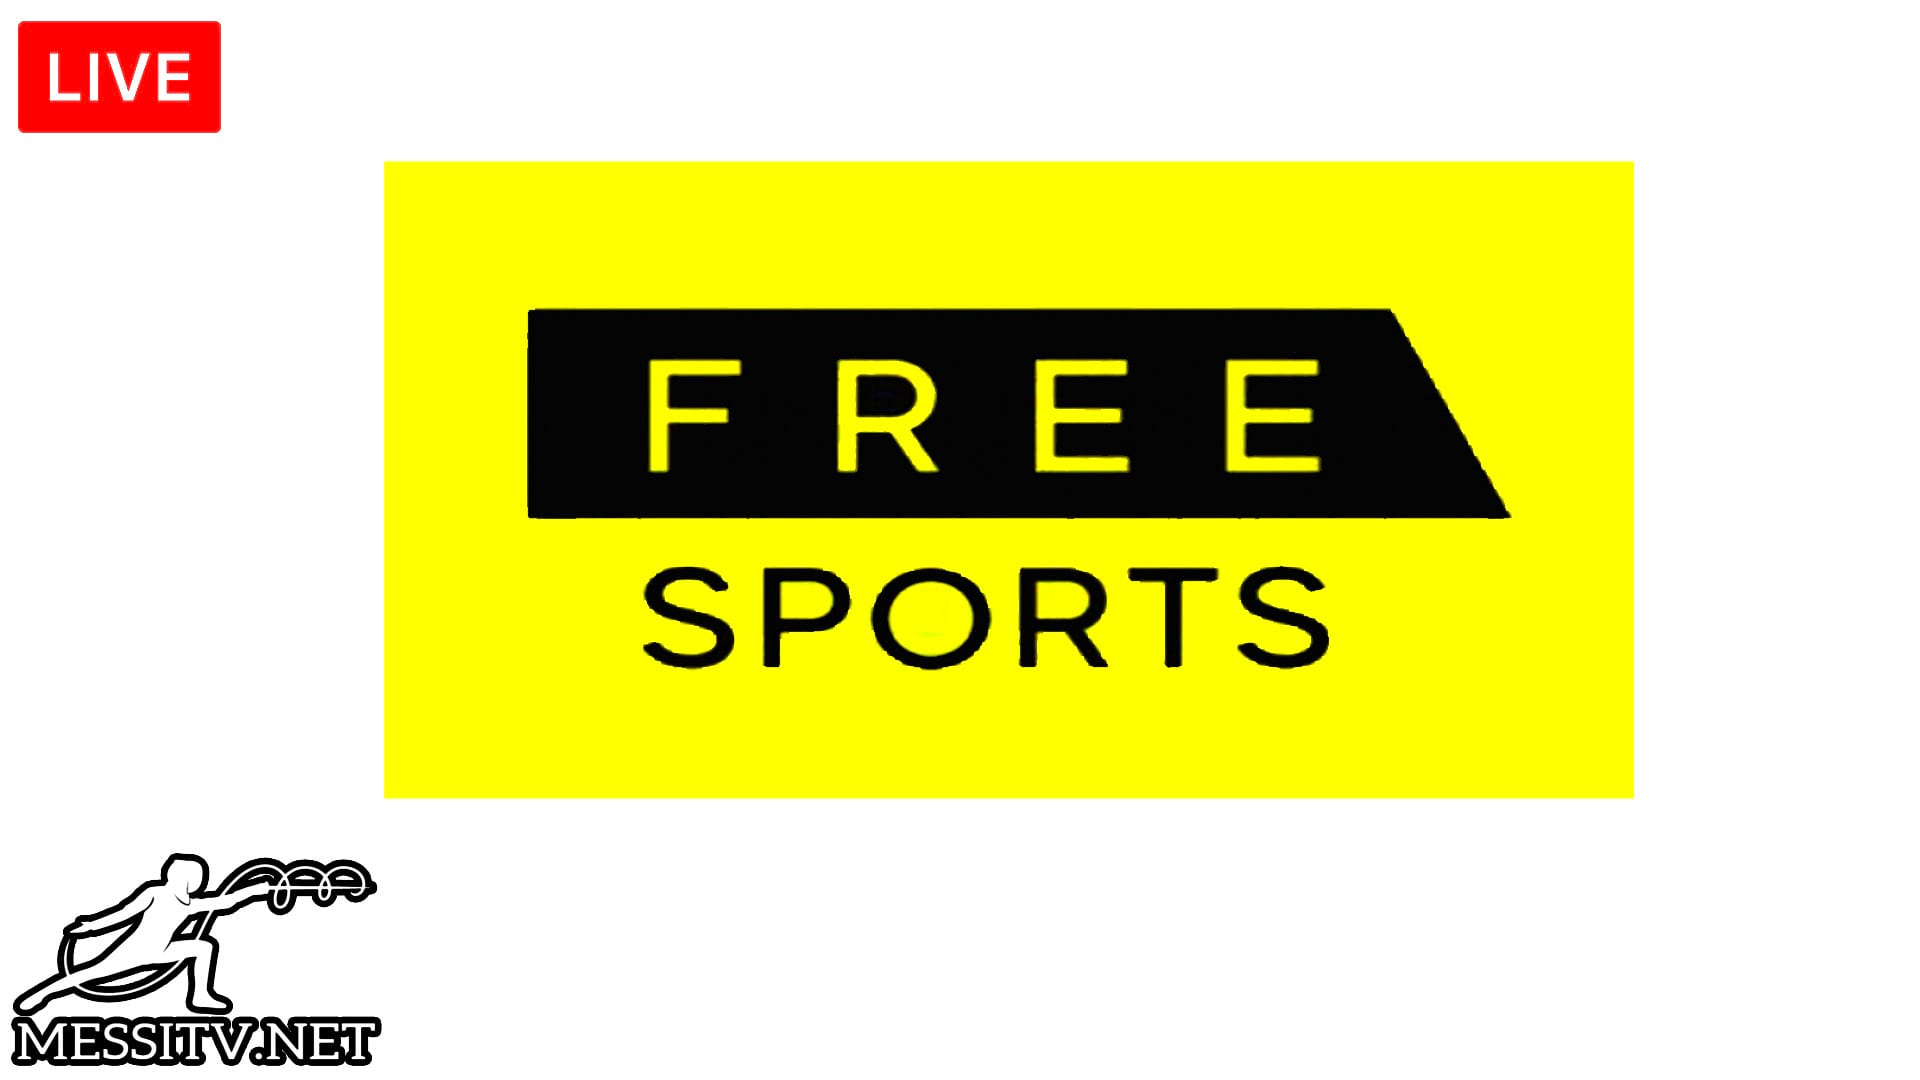 Watch FreeSports TV UK Live stream online, Watch USA TV Live stream online free, Watch UK TV Live stream online